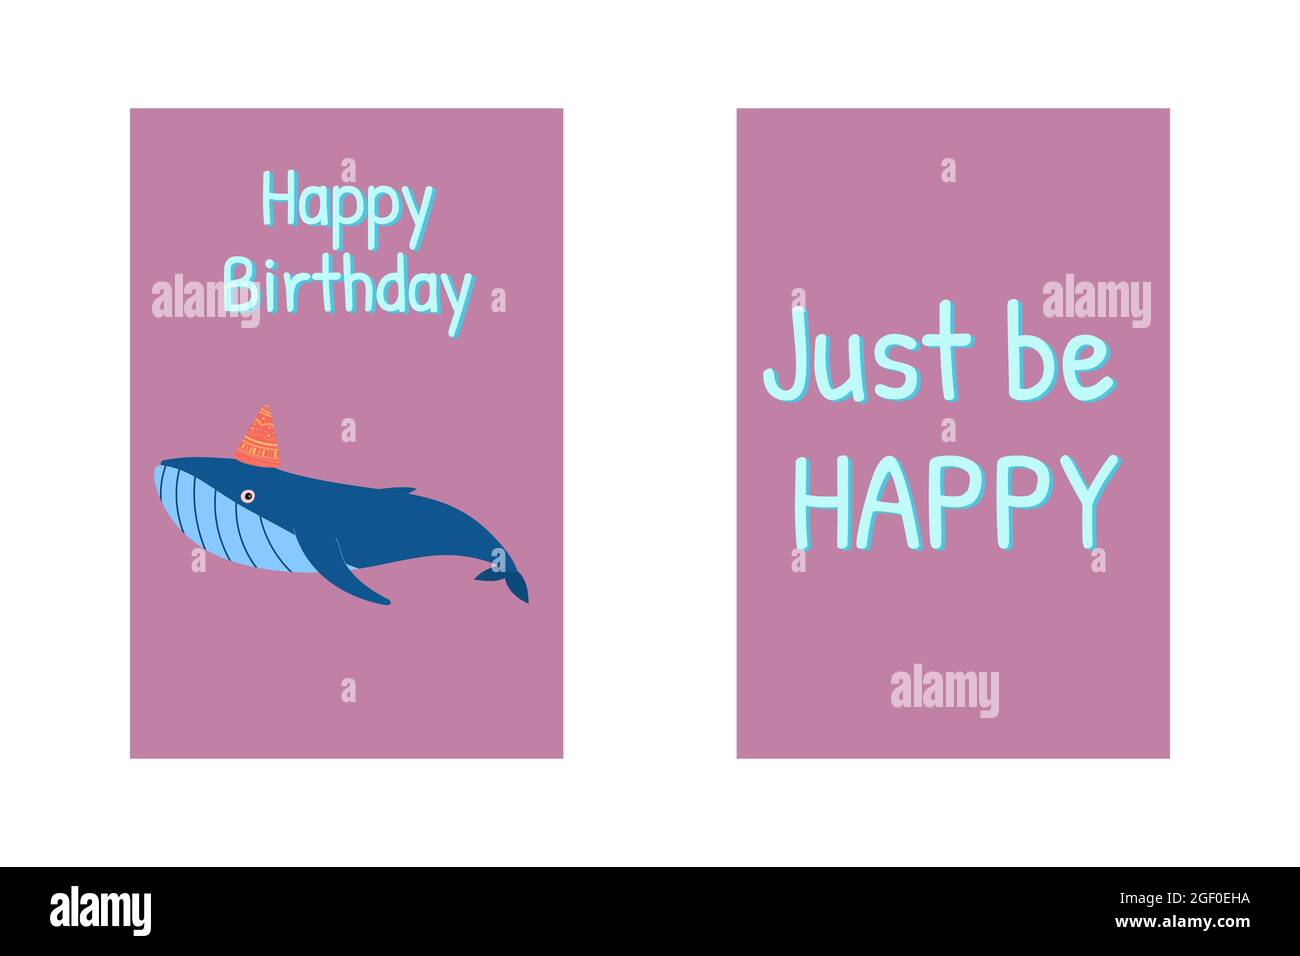 Cartes de vœux d'anniversaire avec baleine, signe joyeux anniversaire et citation drôle juste être heureux. Illustration amusante. Adorable personnage d'animaux de mer Illustration de Vecteur